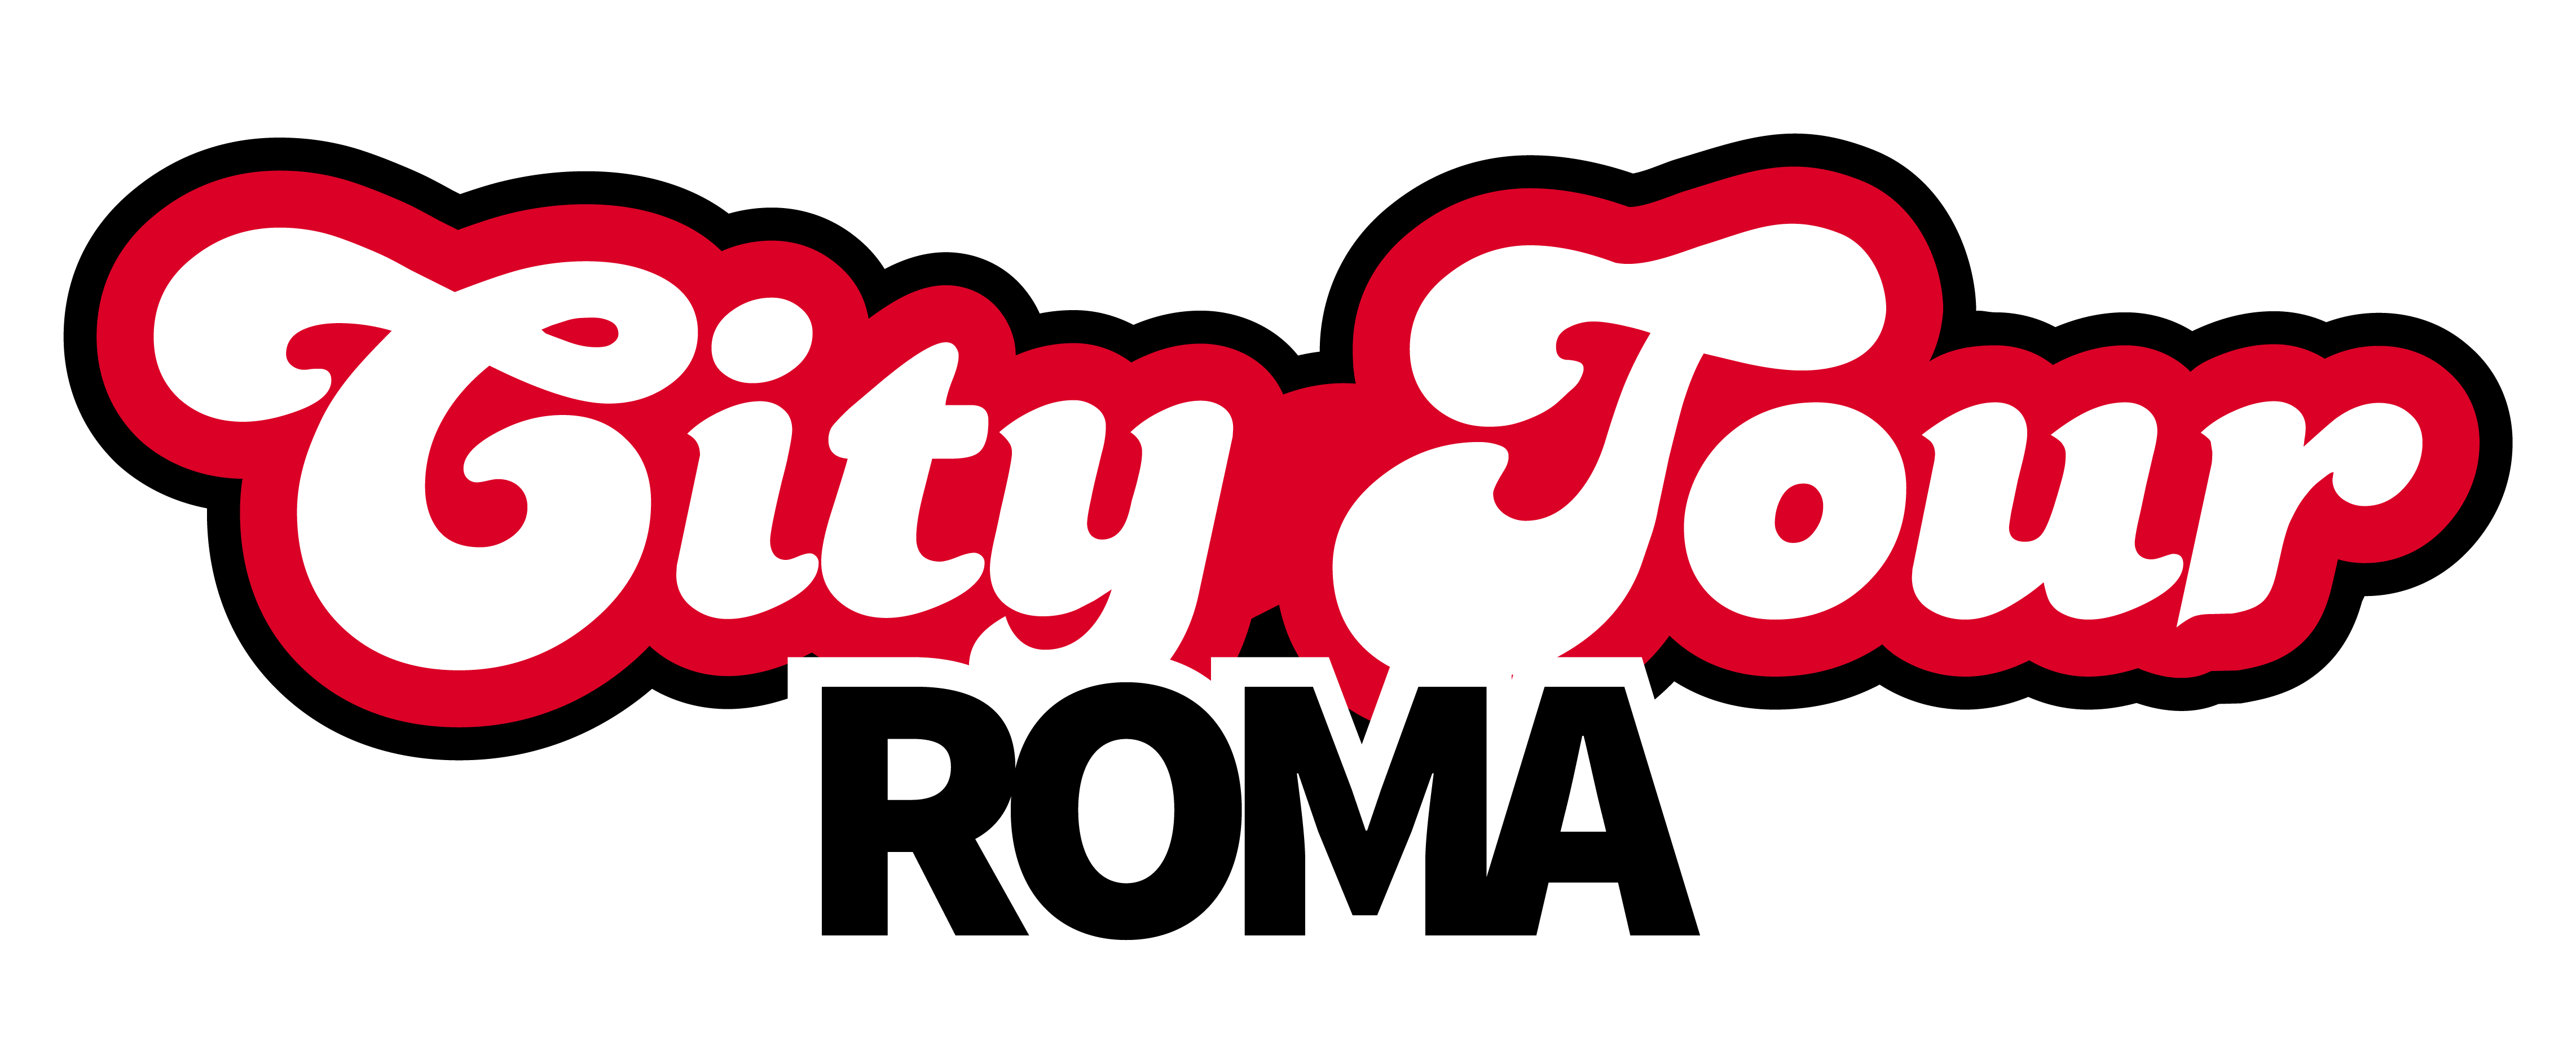 Roma City Tour